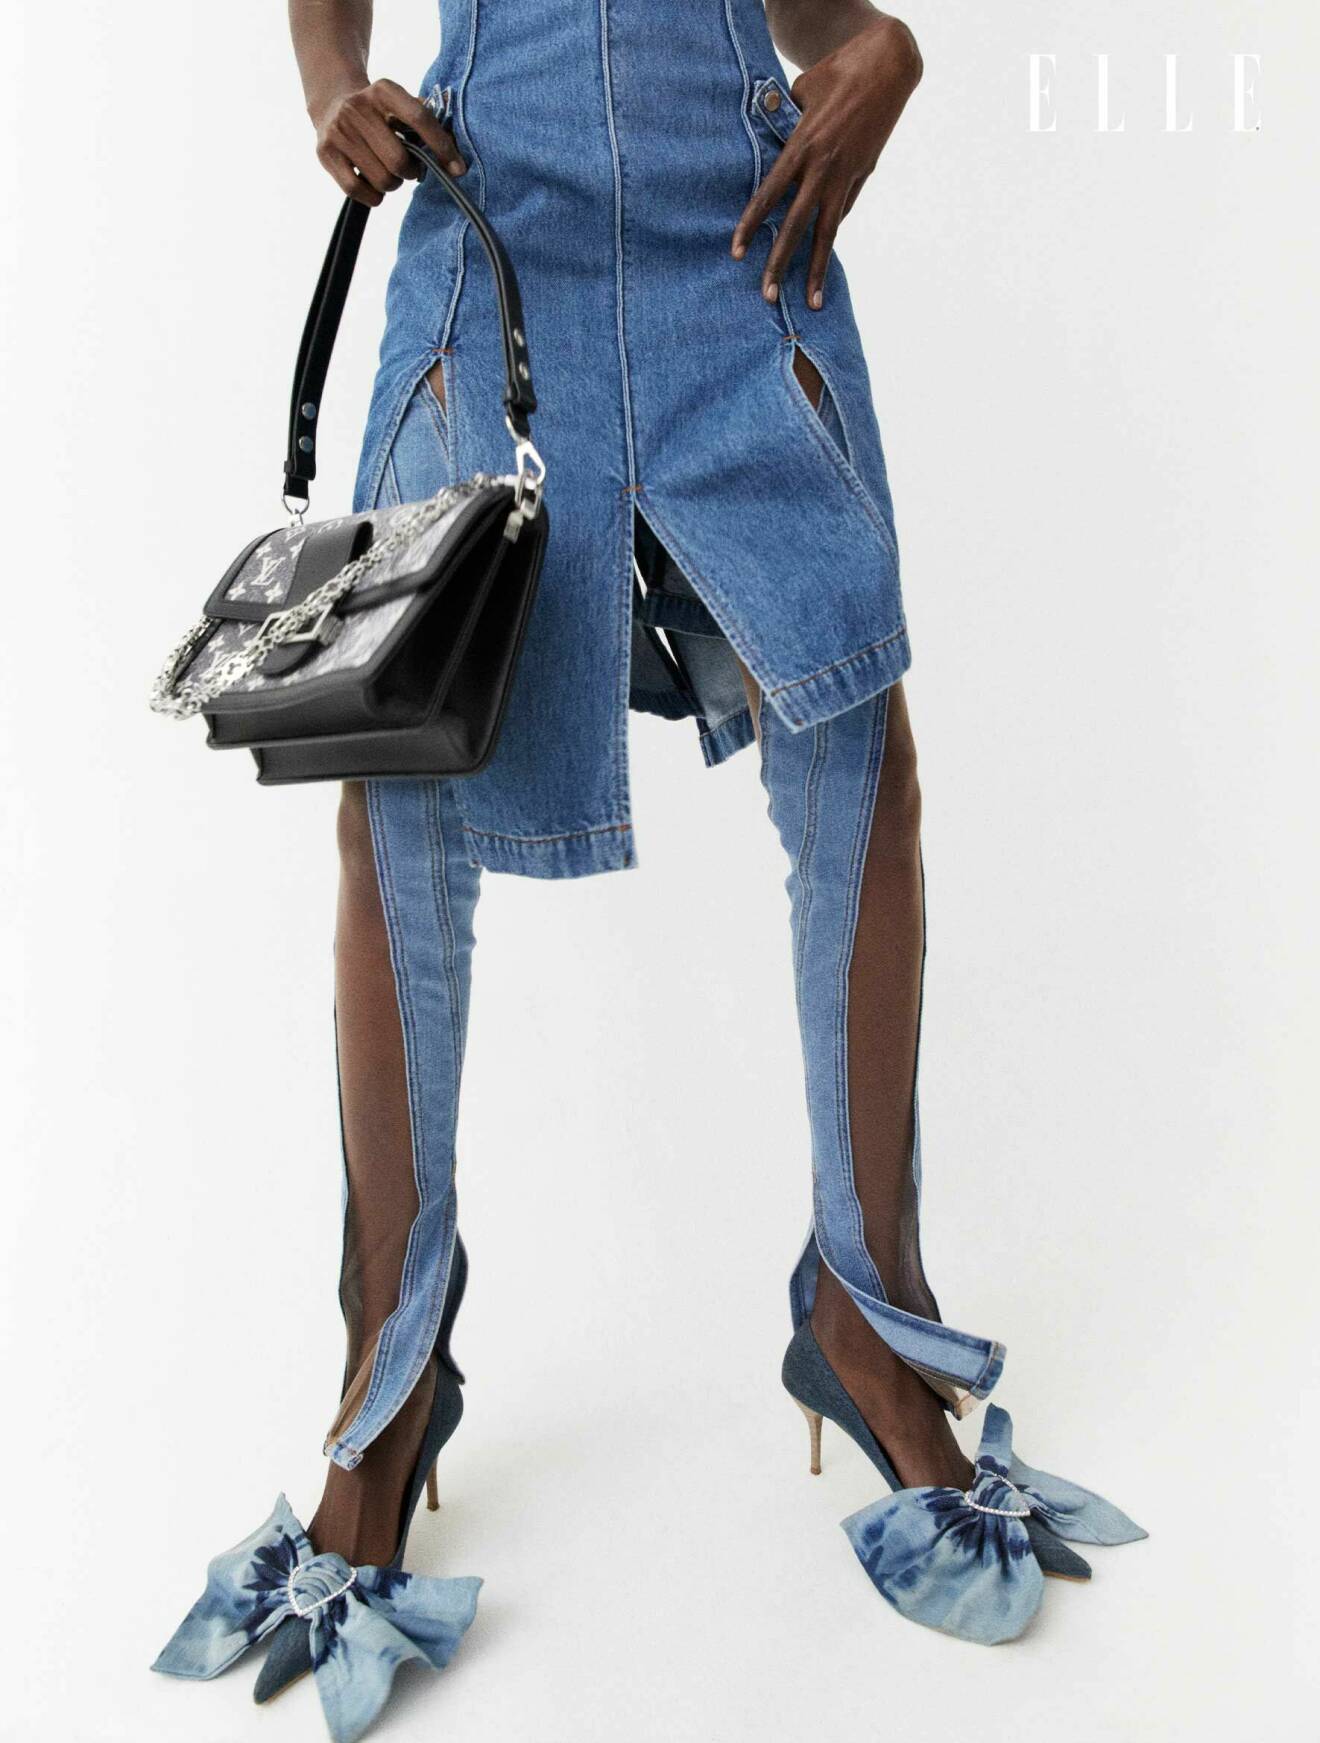 Fotomodellen bär en klänning i denim tillsammans med en svart handväska och skor med denimrosetter.